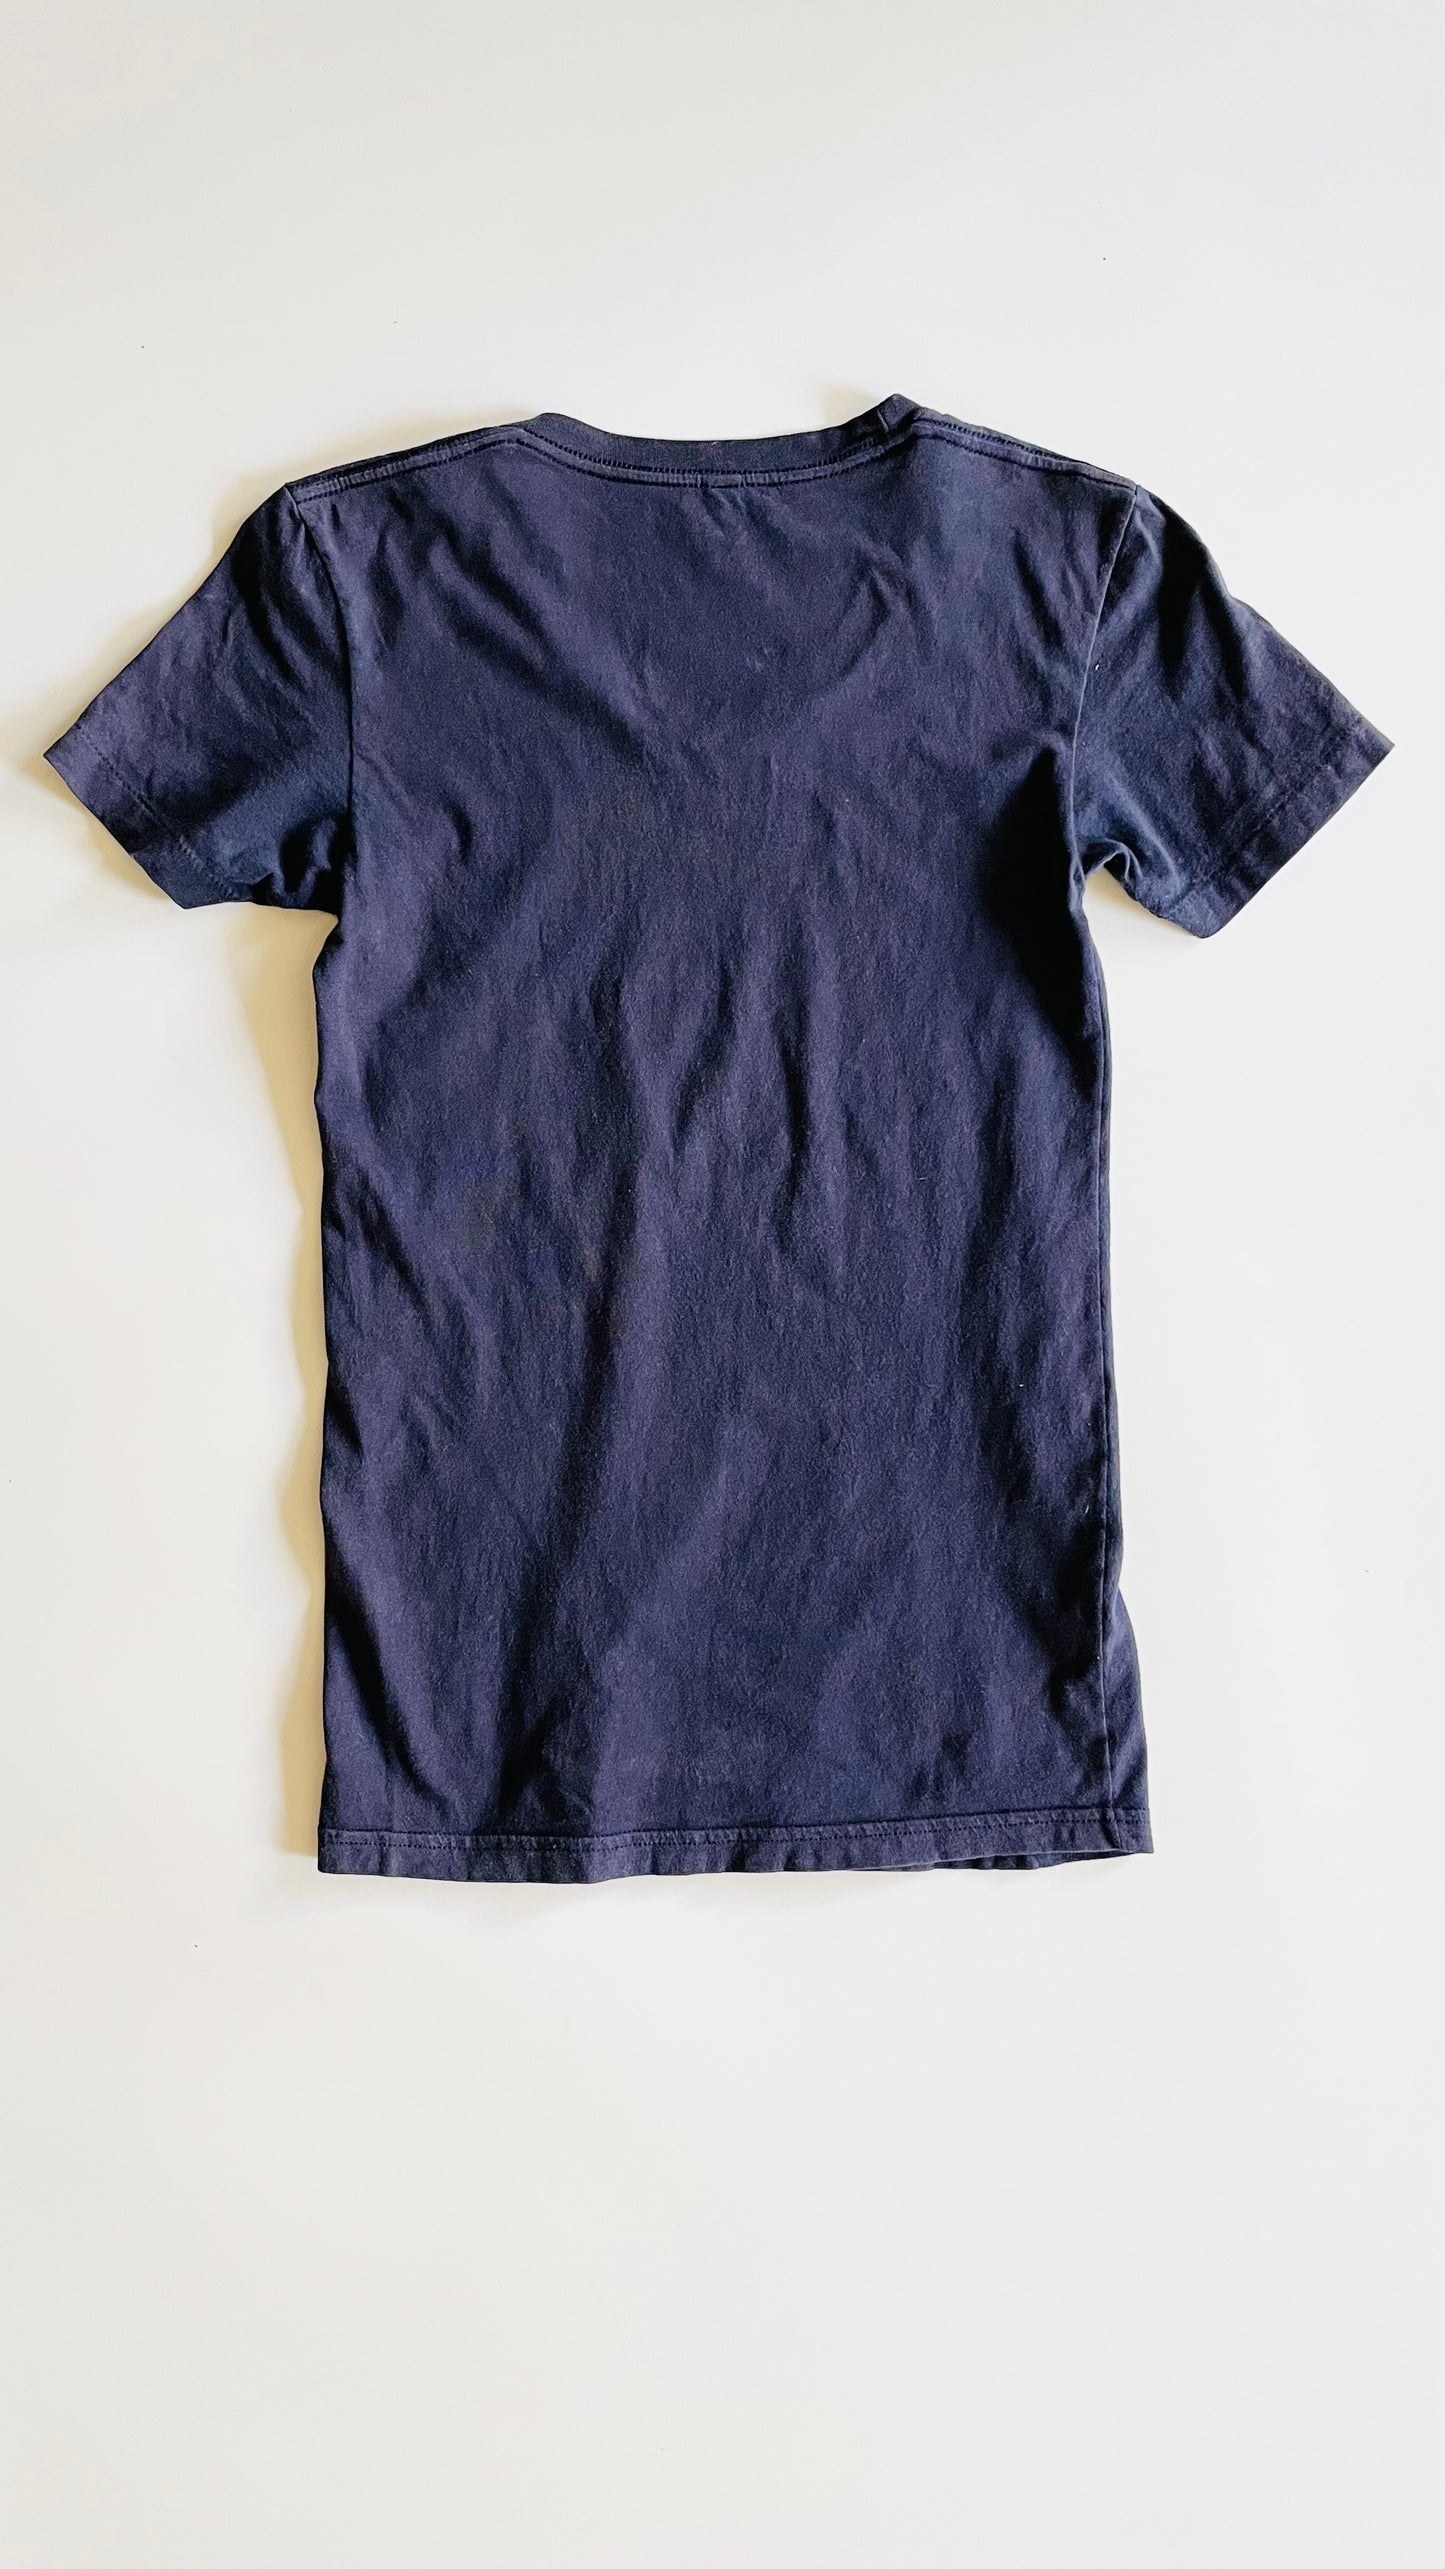 Vintage American Apparel Y2K navy crewneck t-shirt - Size M